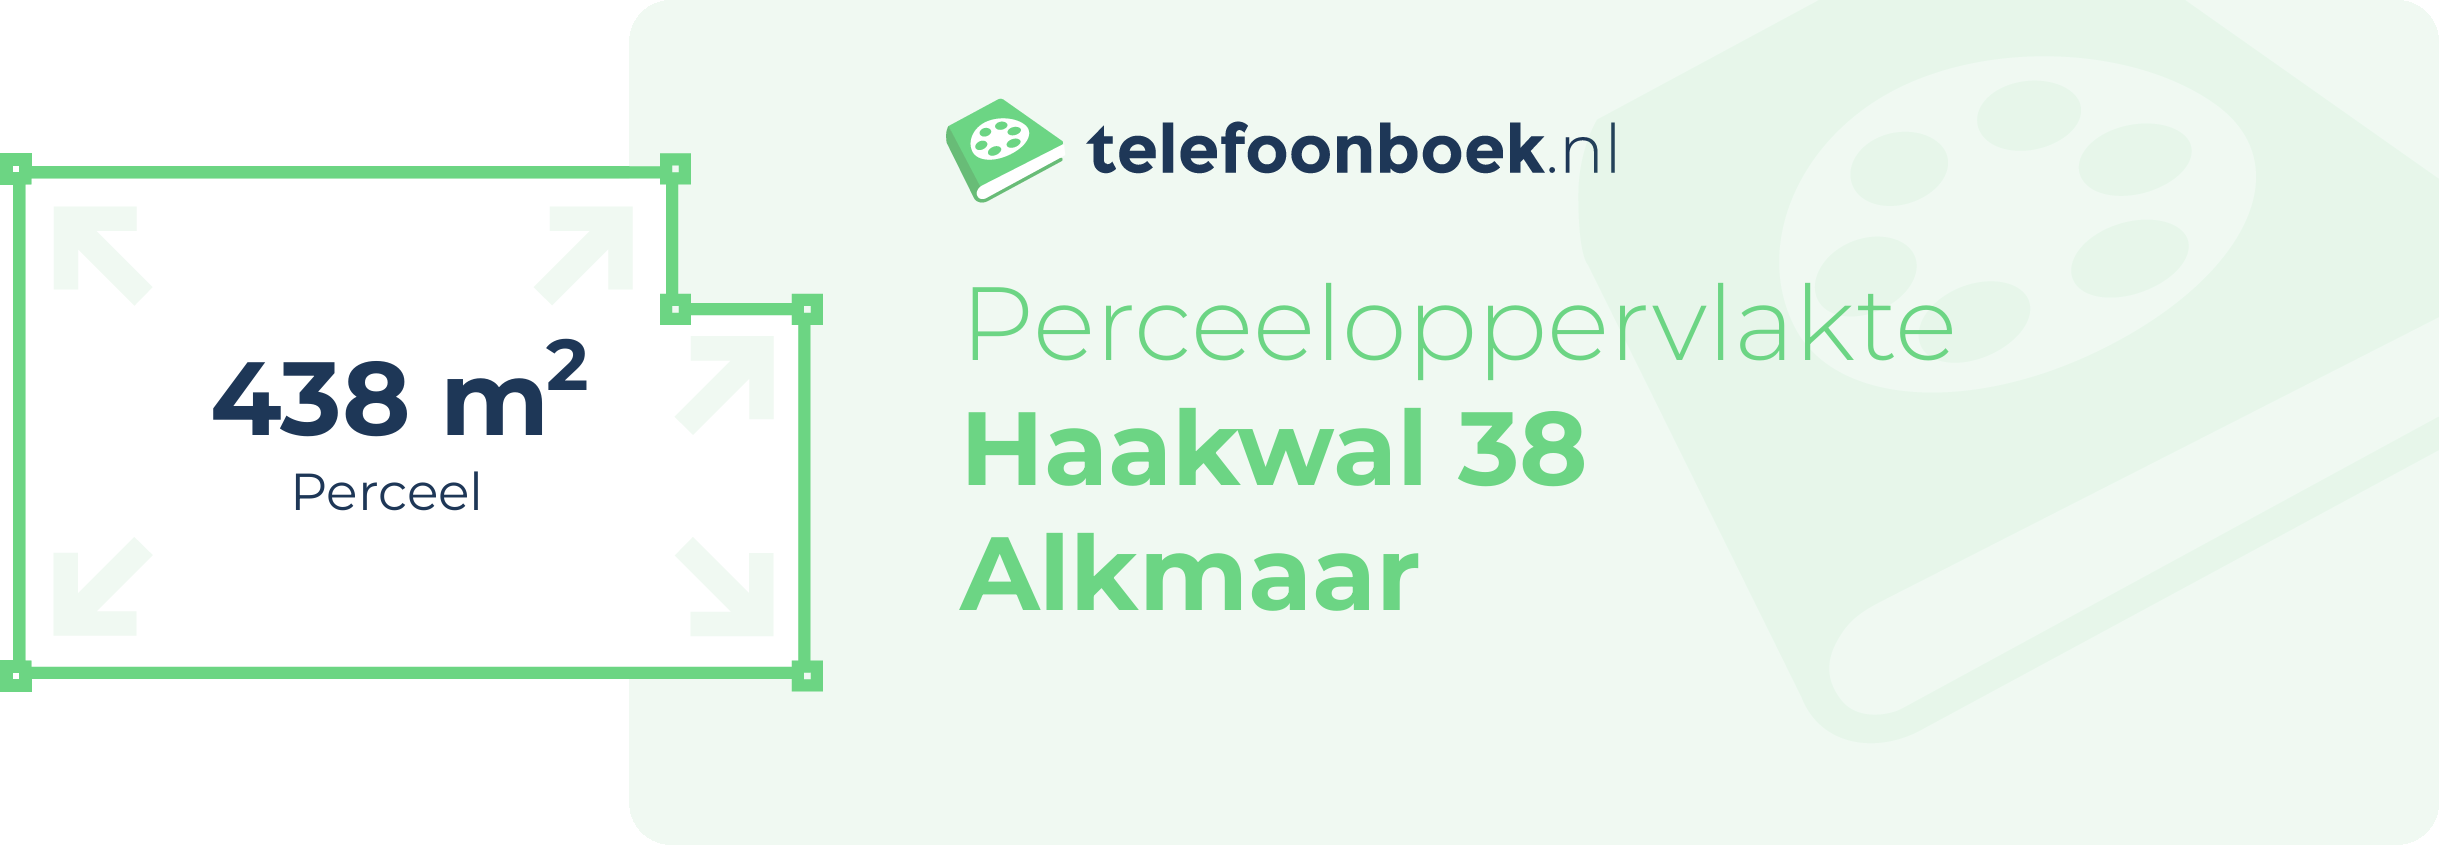 Perceeloppervlakte Haakwal 38 Alkmaar